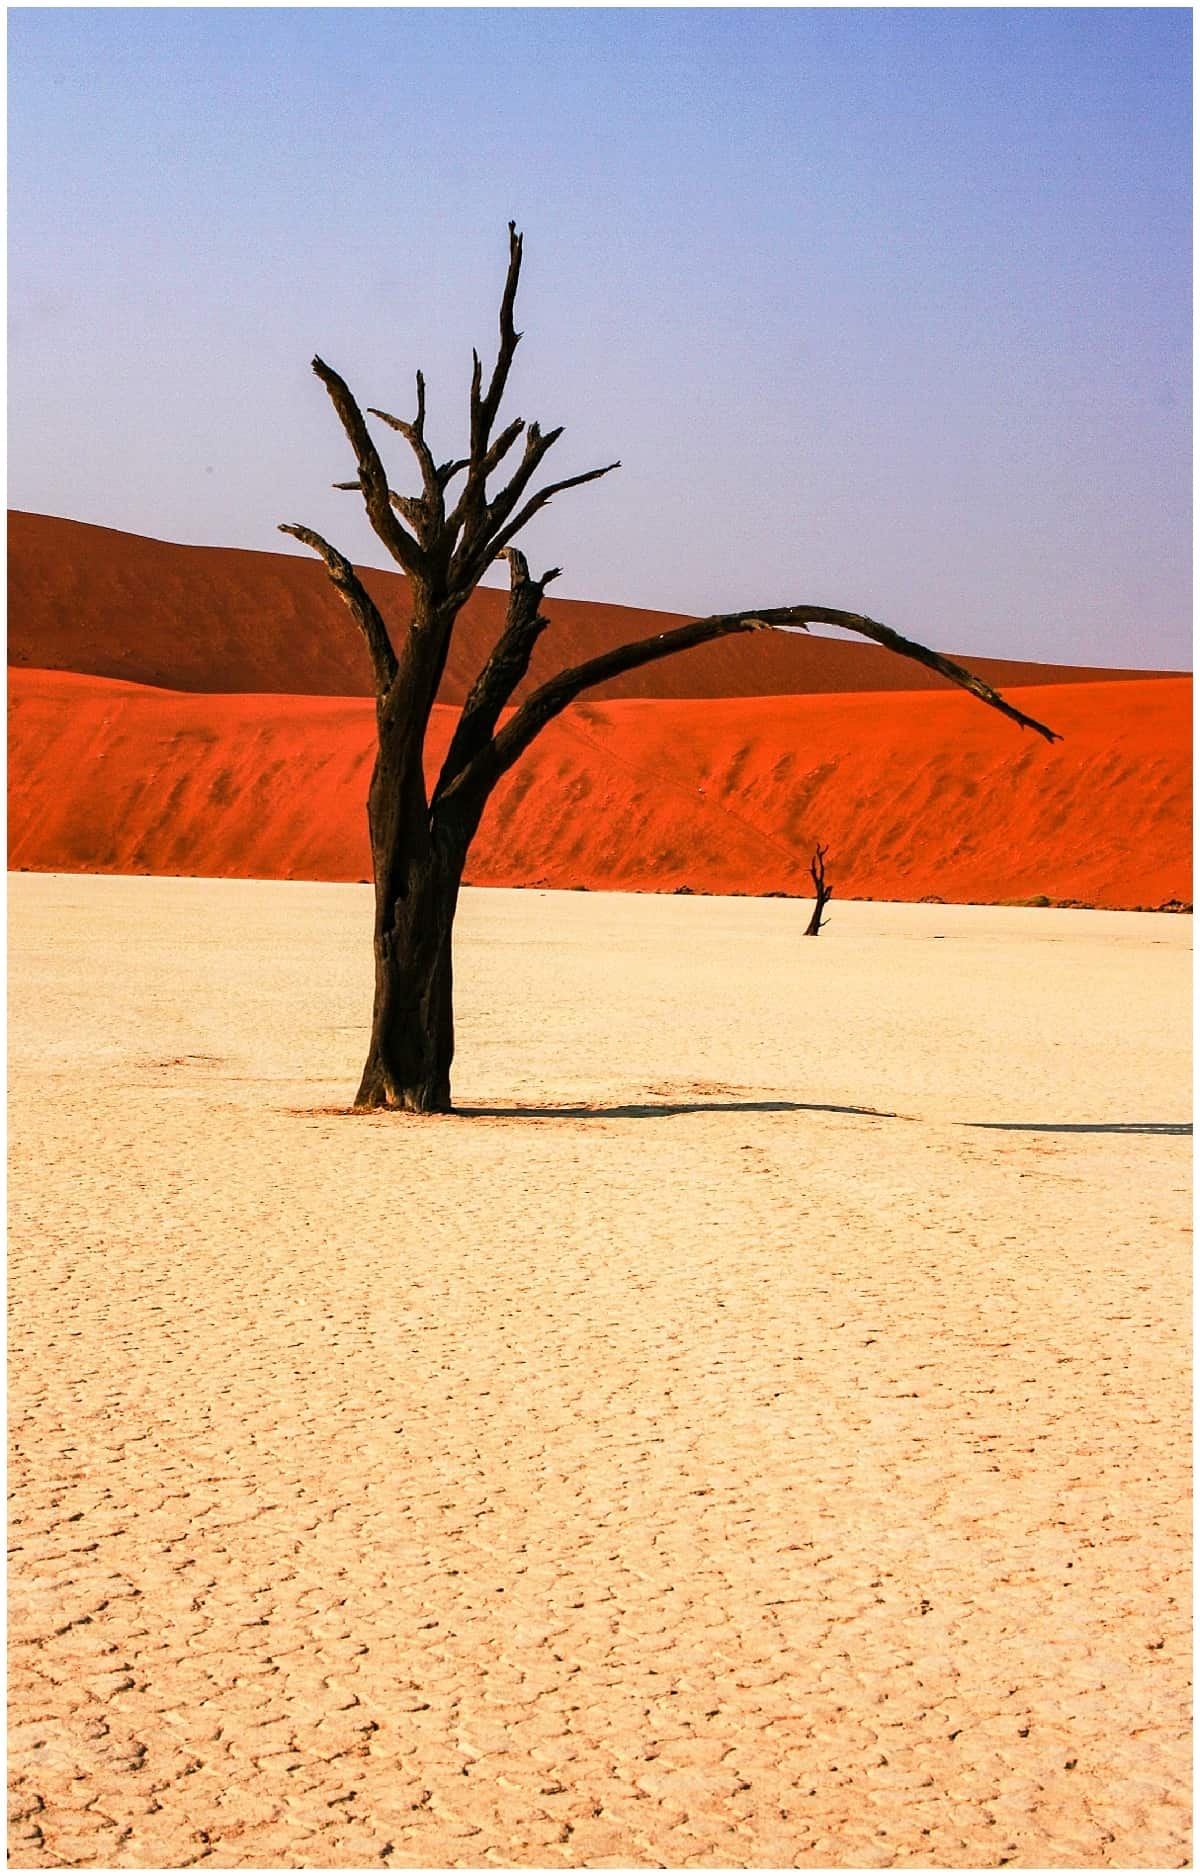 Dead trees in the Namib desert